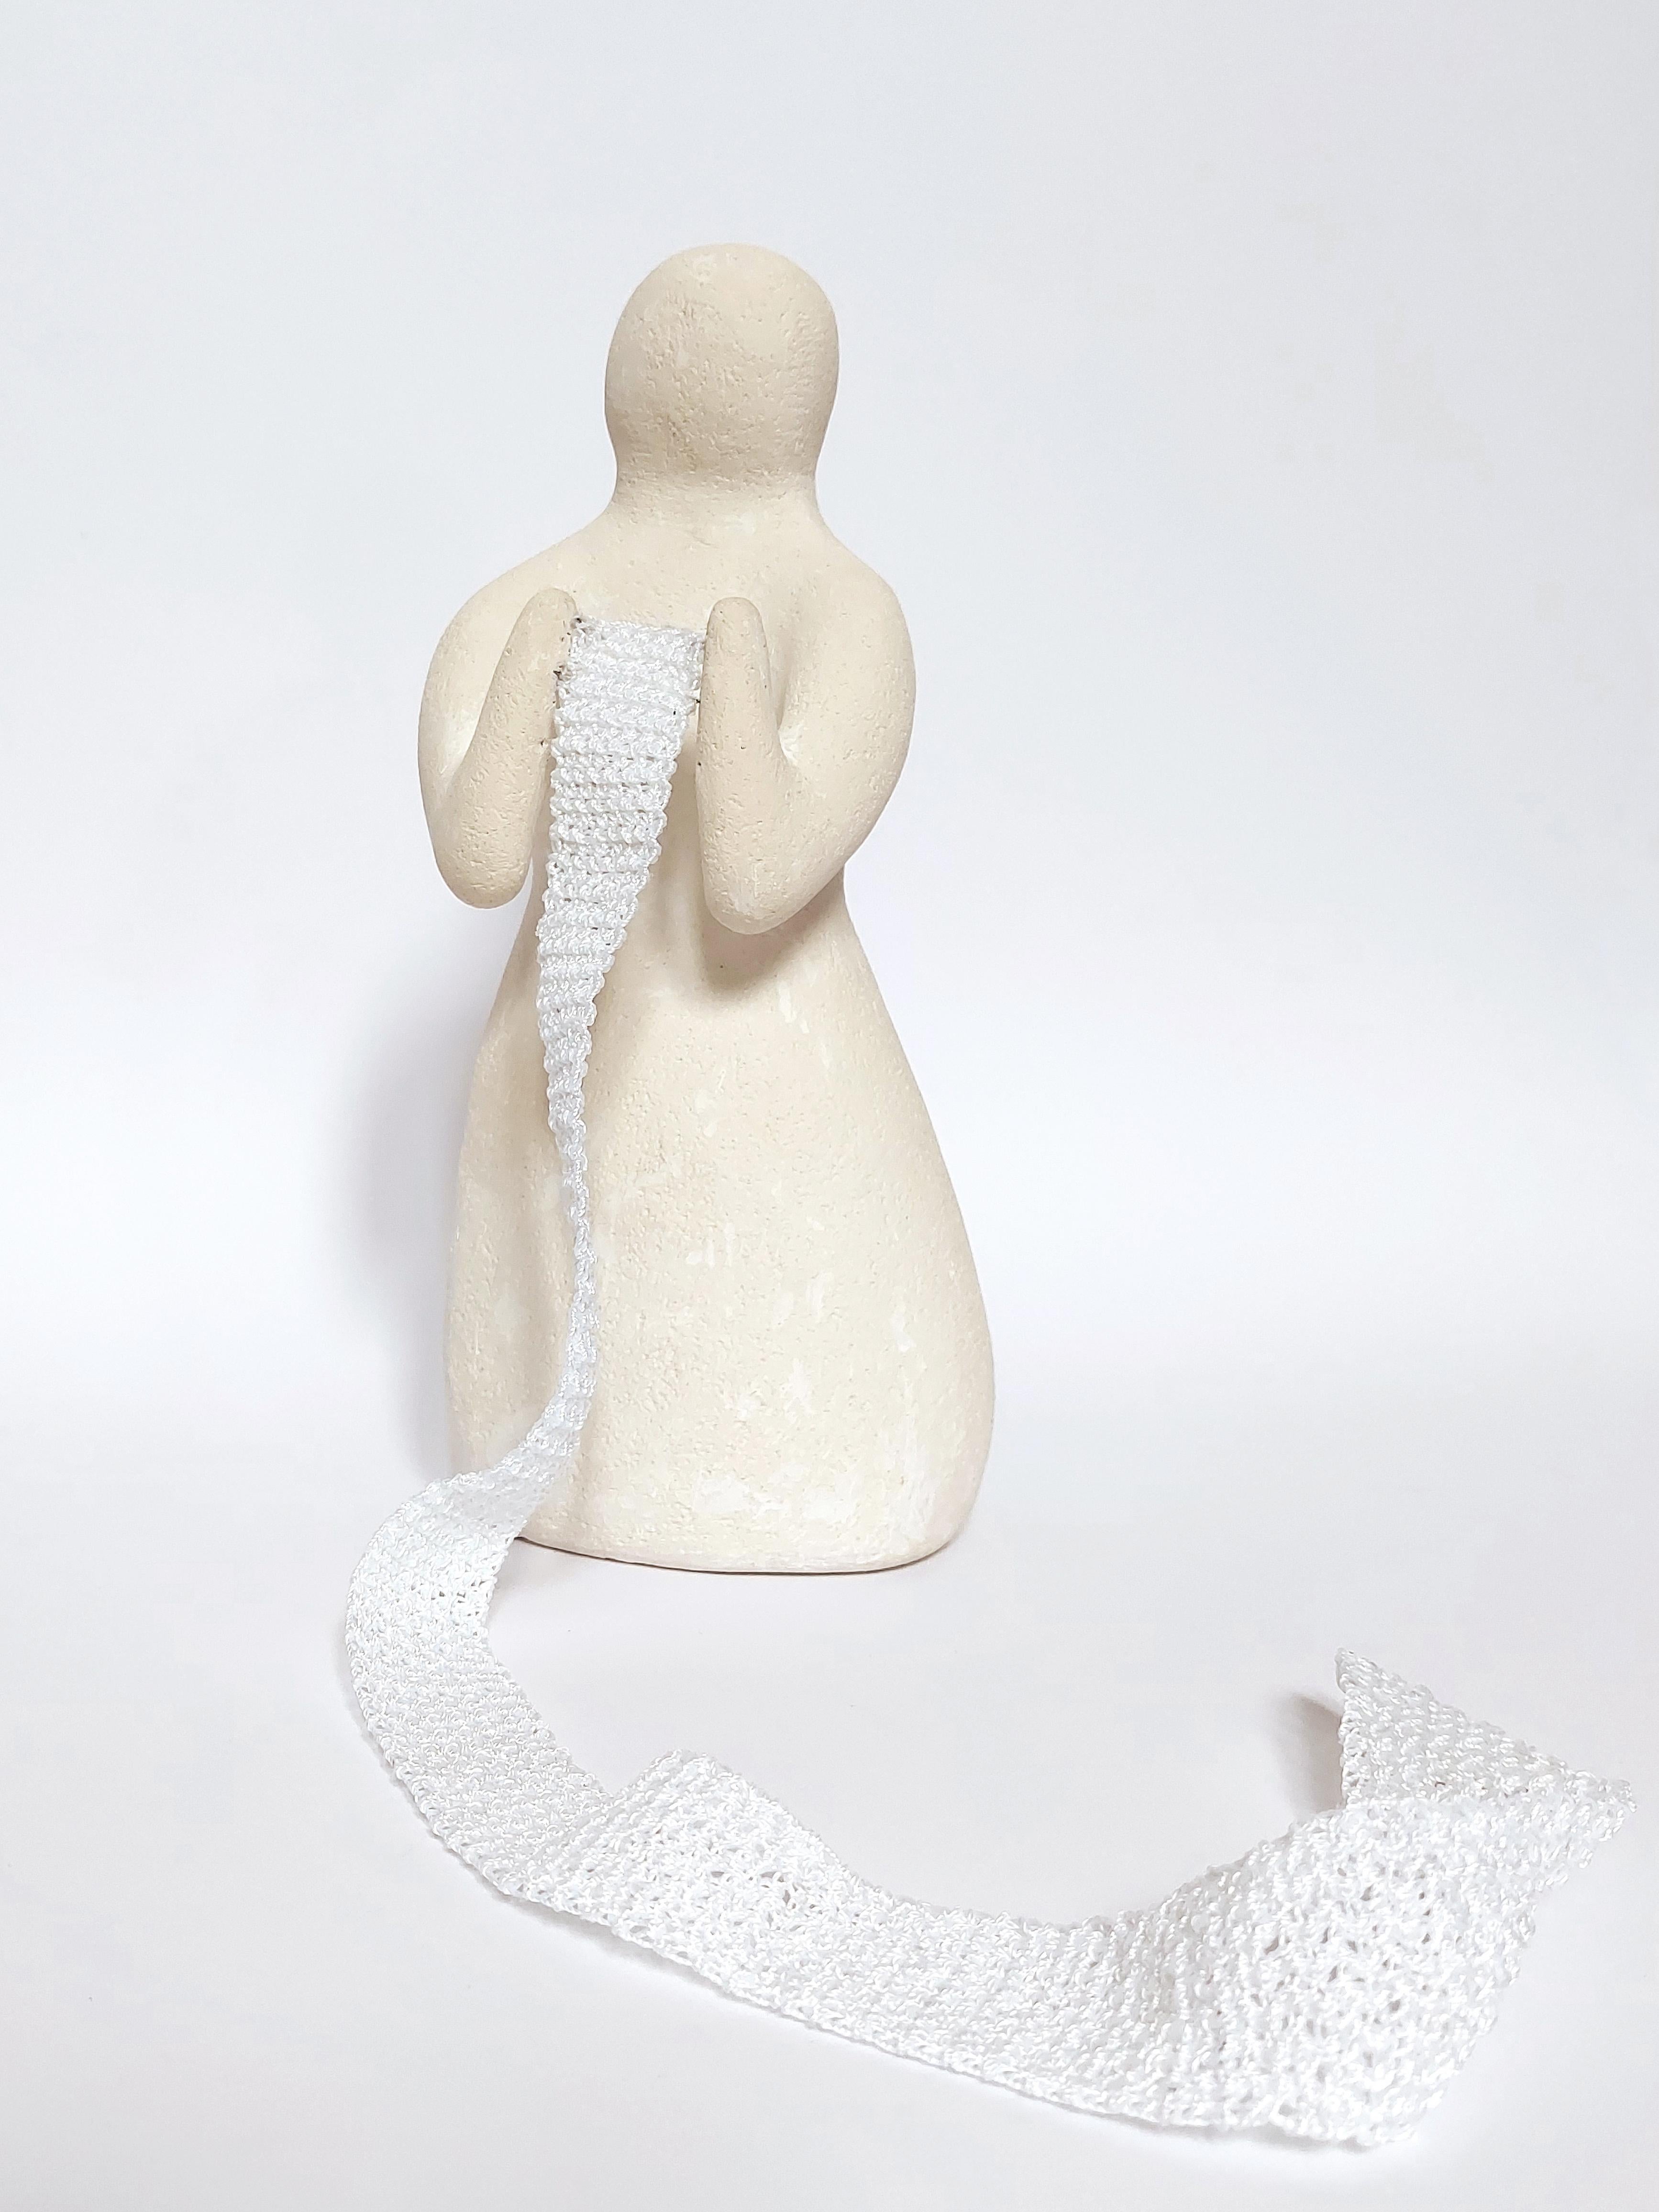 Figurative Sculpture Sve Gri - Figure d'une femme. Sculpture en céramique avec un sens. L'énergie féminine. Whiting.